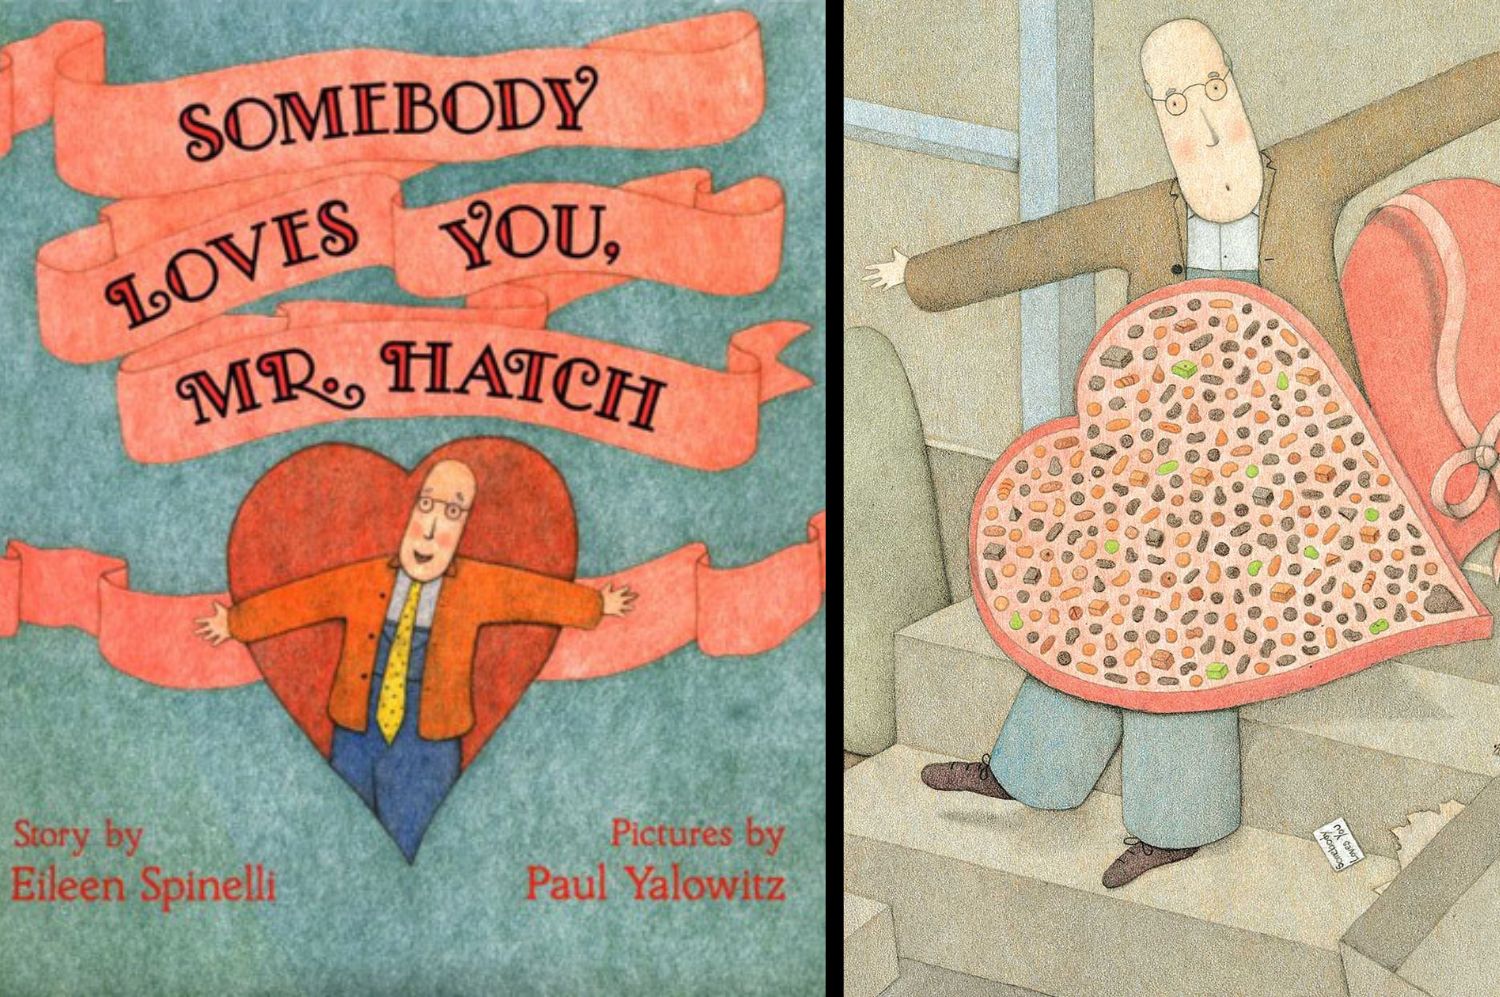 L'importanza di mostrare amore e gentilezza nell'albo illustrato Somebody Loves You, Mr. Hatch